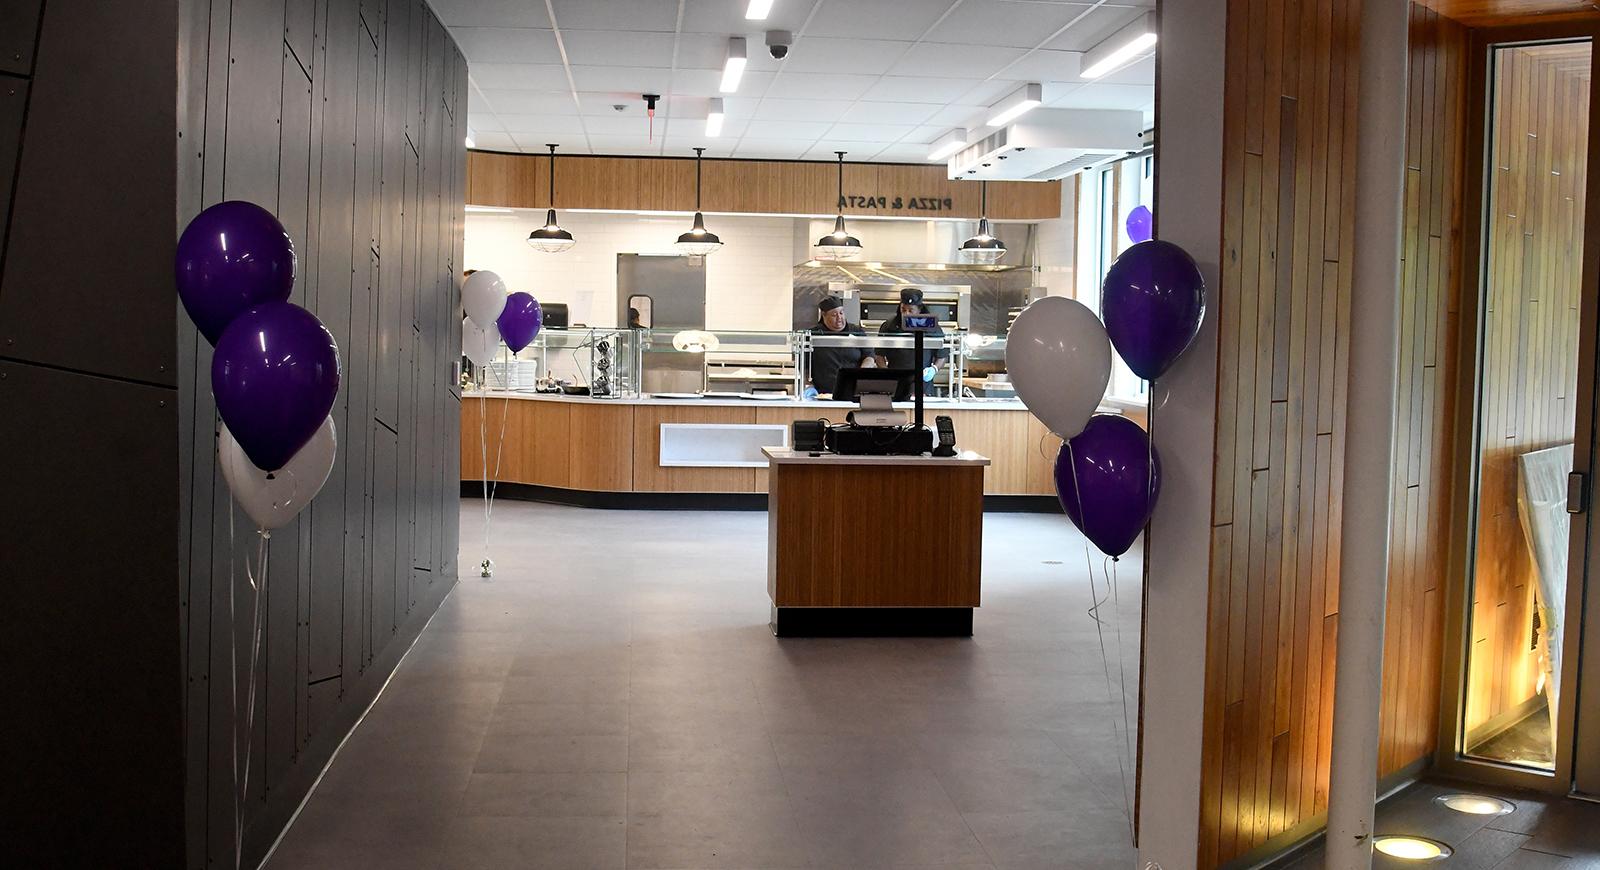 新改建的安德森餐厅的入口，有紫色的气球